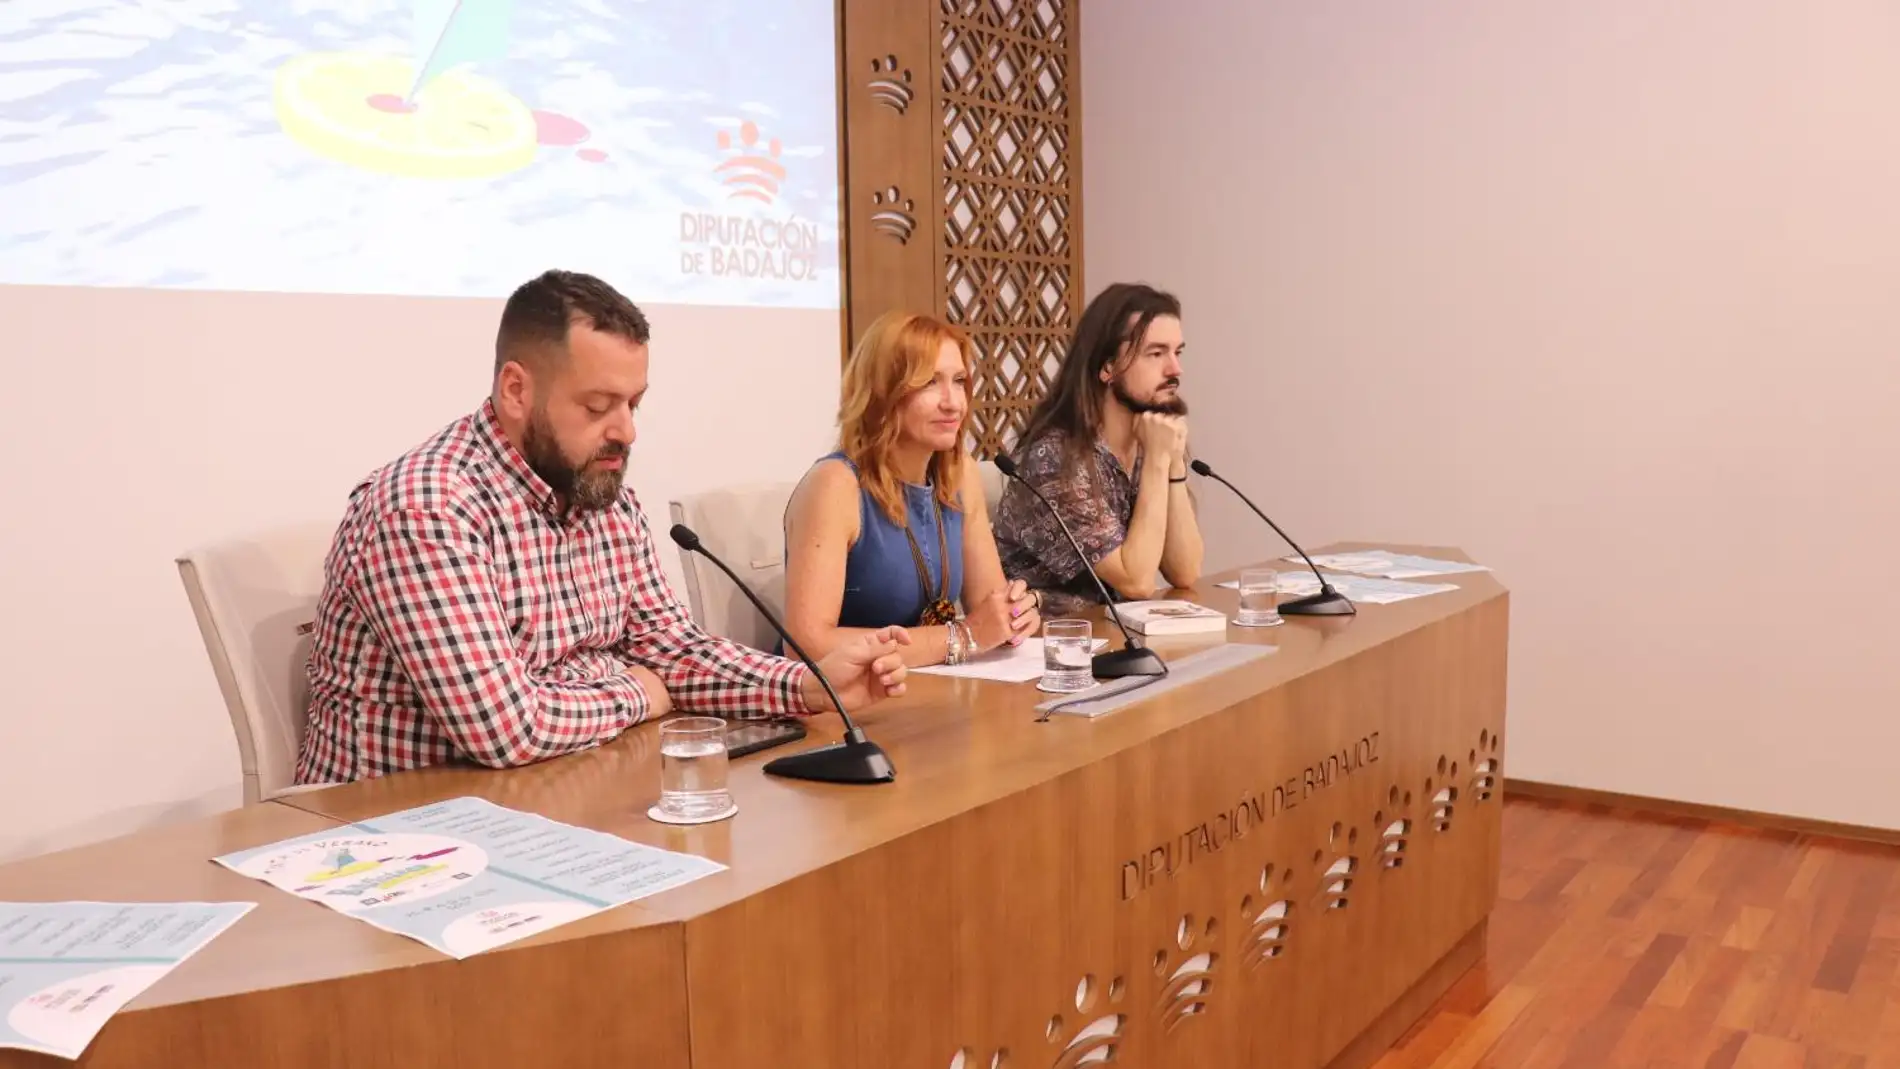 La provincia de Badajoz contará este verano con una biblioteca ambulante para concienciar sobre Igualdad